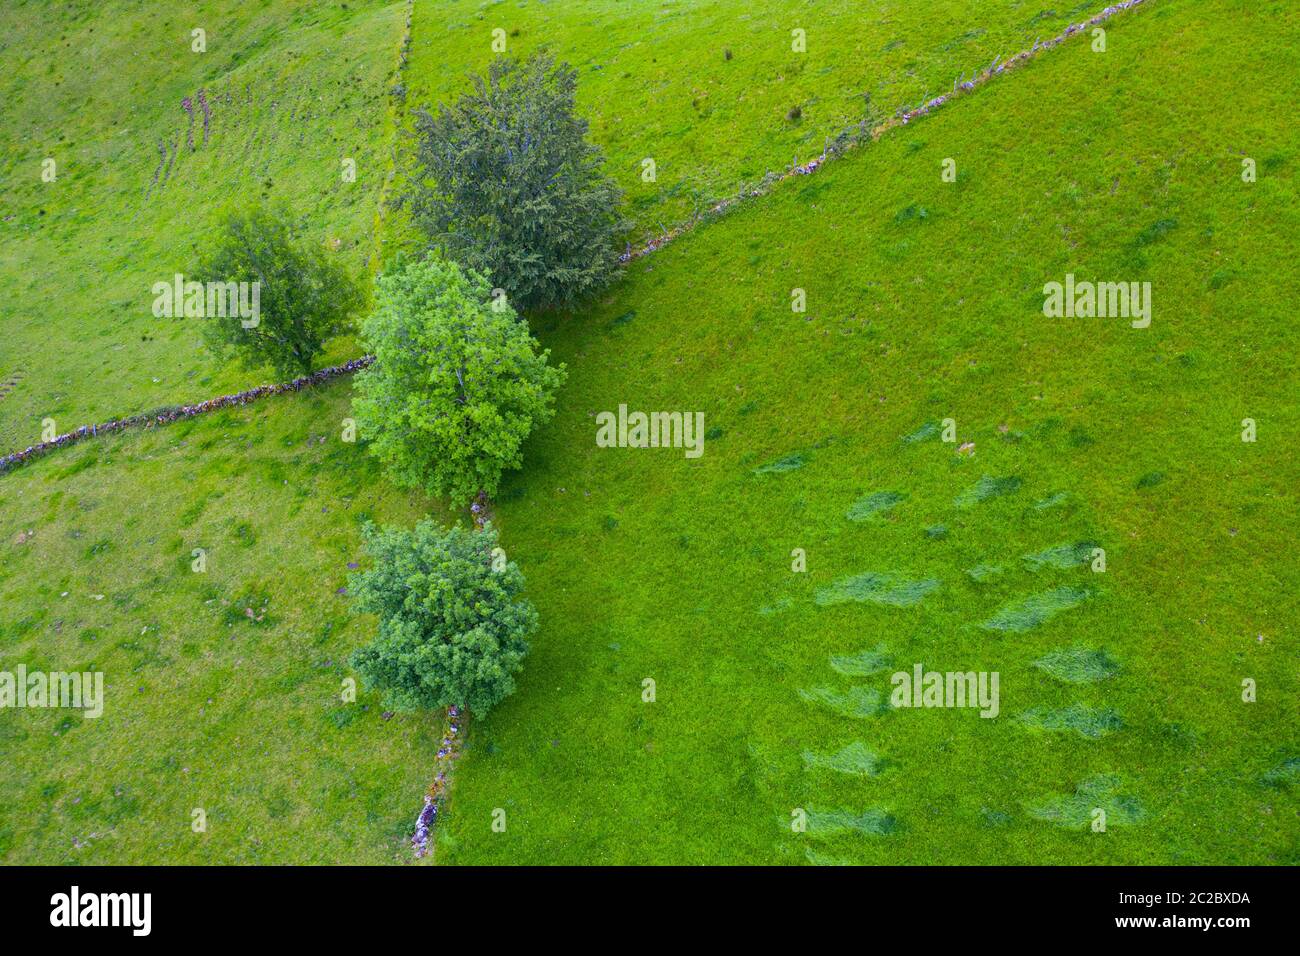 Vue aérienne avec un drone du paysage de printemps des chalets et des prairies de pasiegas dans la vallée de Miera, dans la Communauté autonome de Cantabrie. Espagne, Europe Banque D'Images